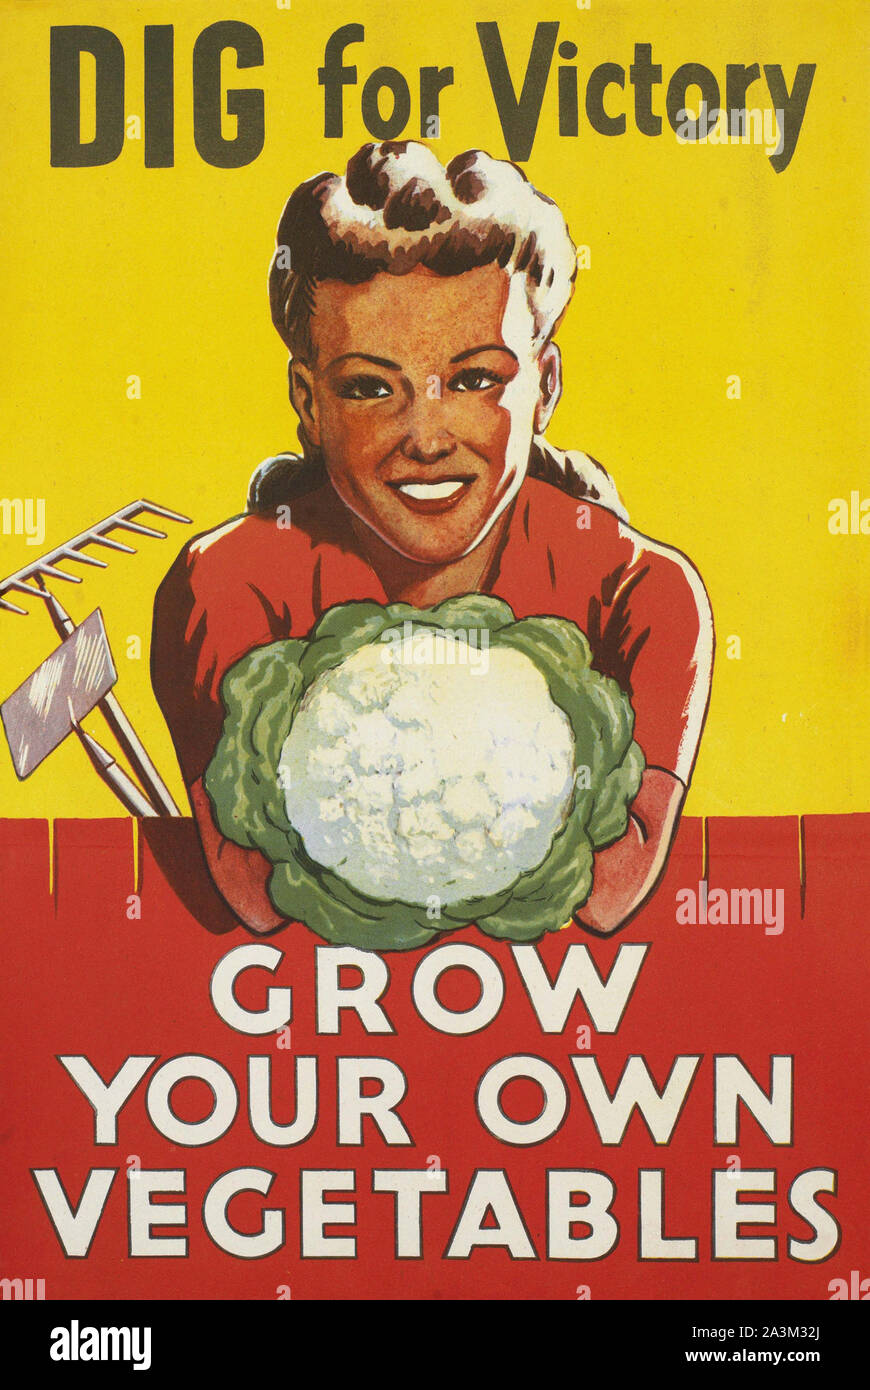 Creusez pour la victoire - cultivez vos propres légumes - affiche de propagande britannique de la Seconde Guerre mondiale Banque D'Images